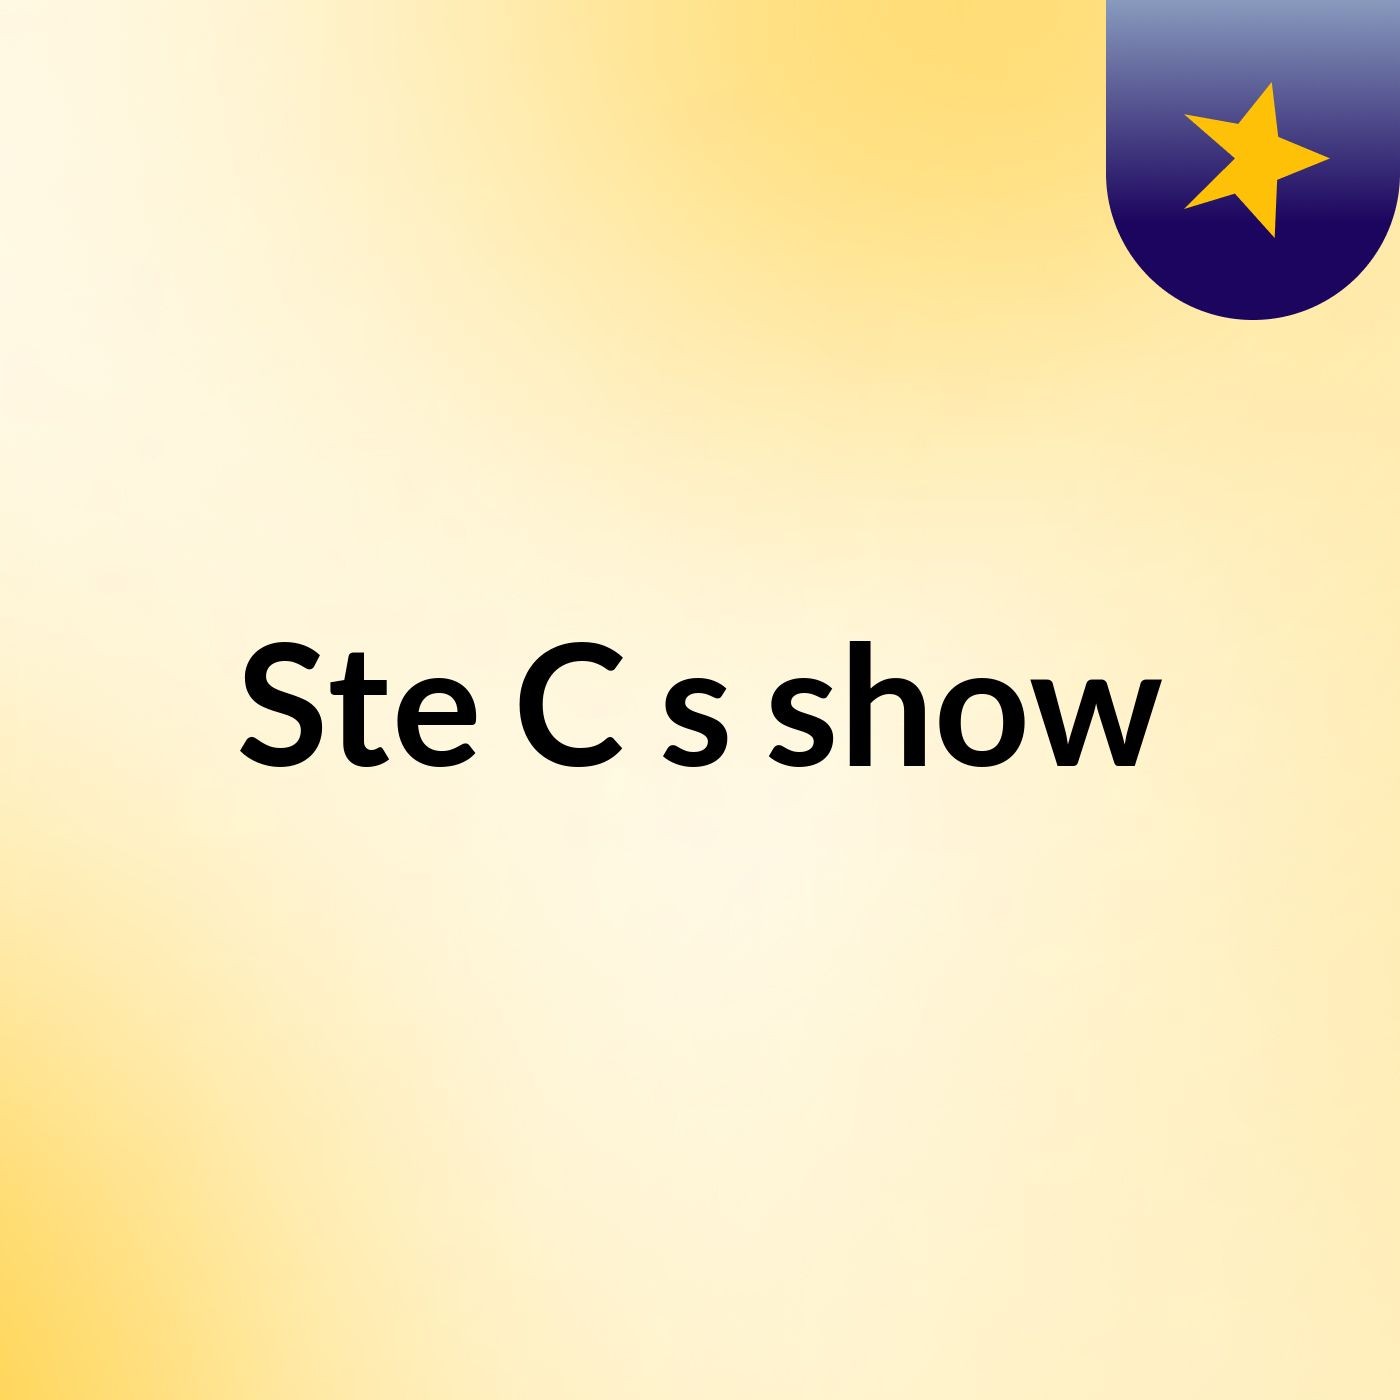 Ste C's show